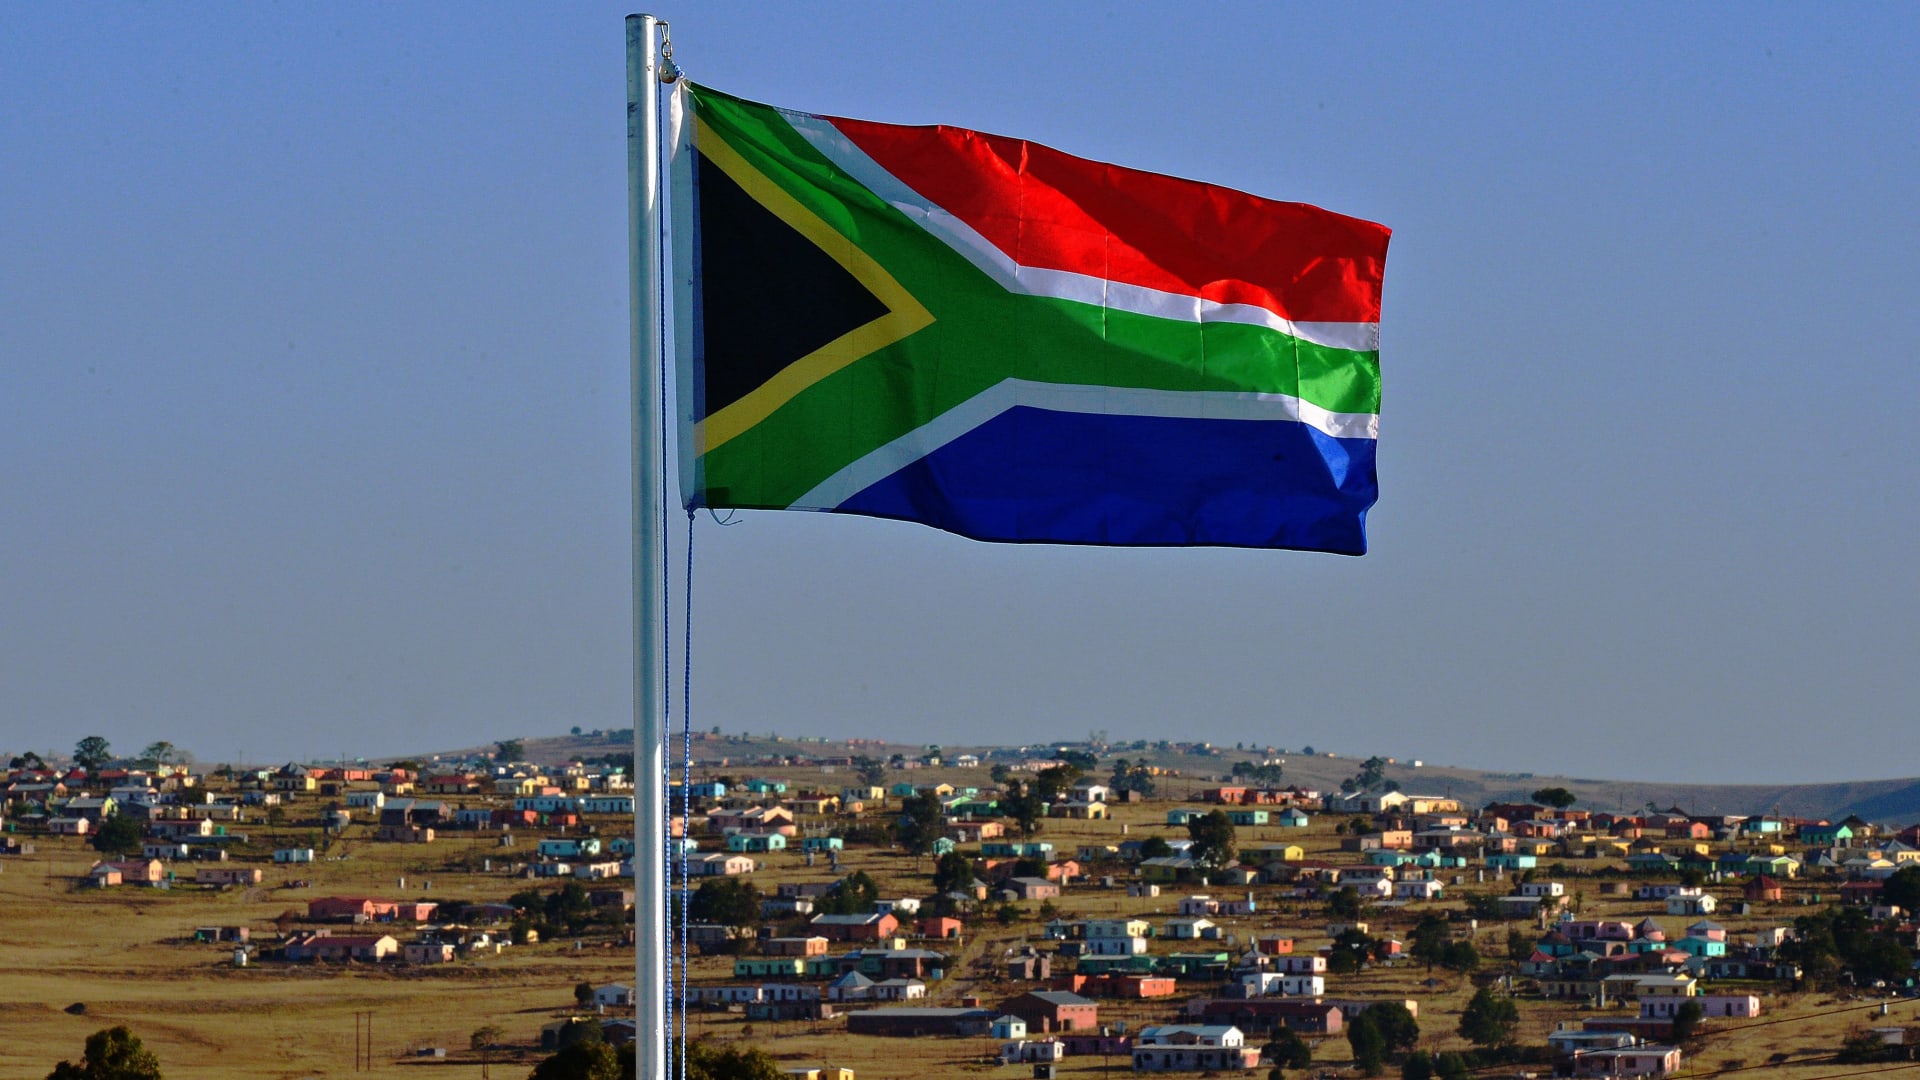  اعتقال مغتصب قاتل هرب من السجن في جنوب أفريقيا مُتهم بتزوير وفاته خارج البلاد